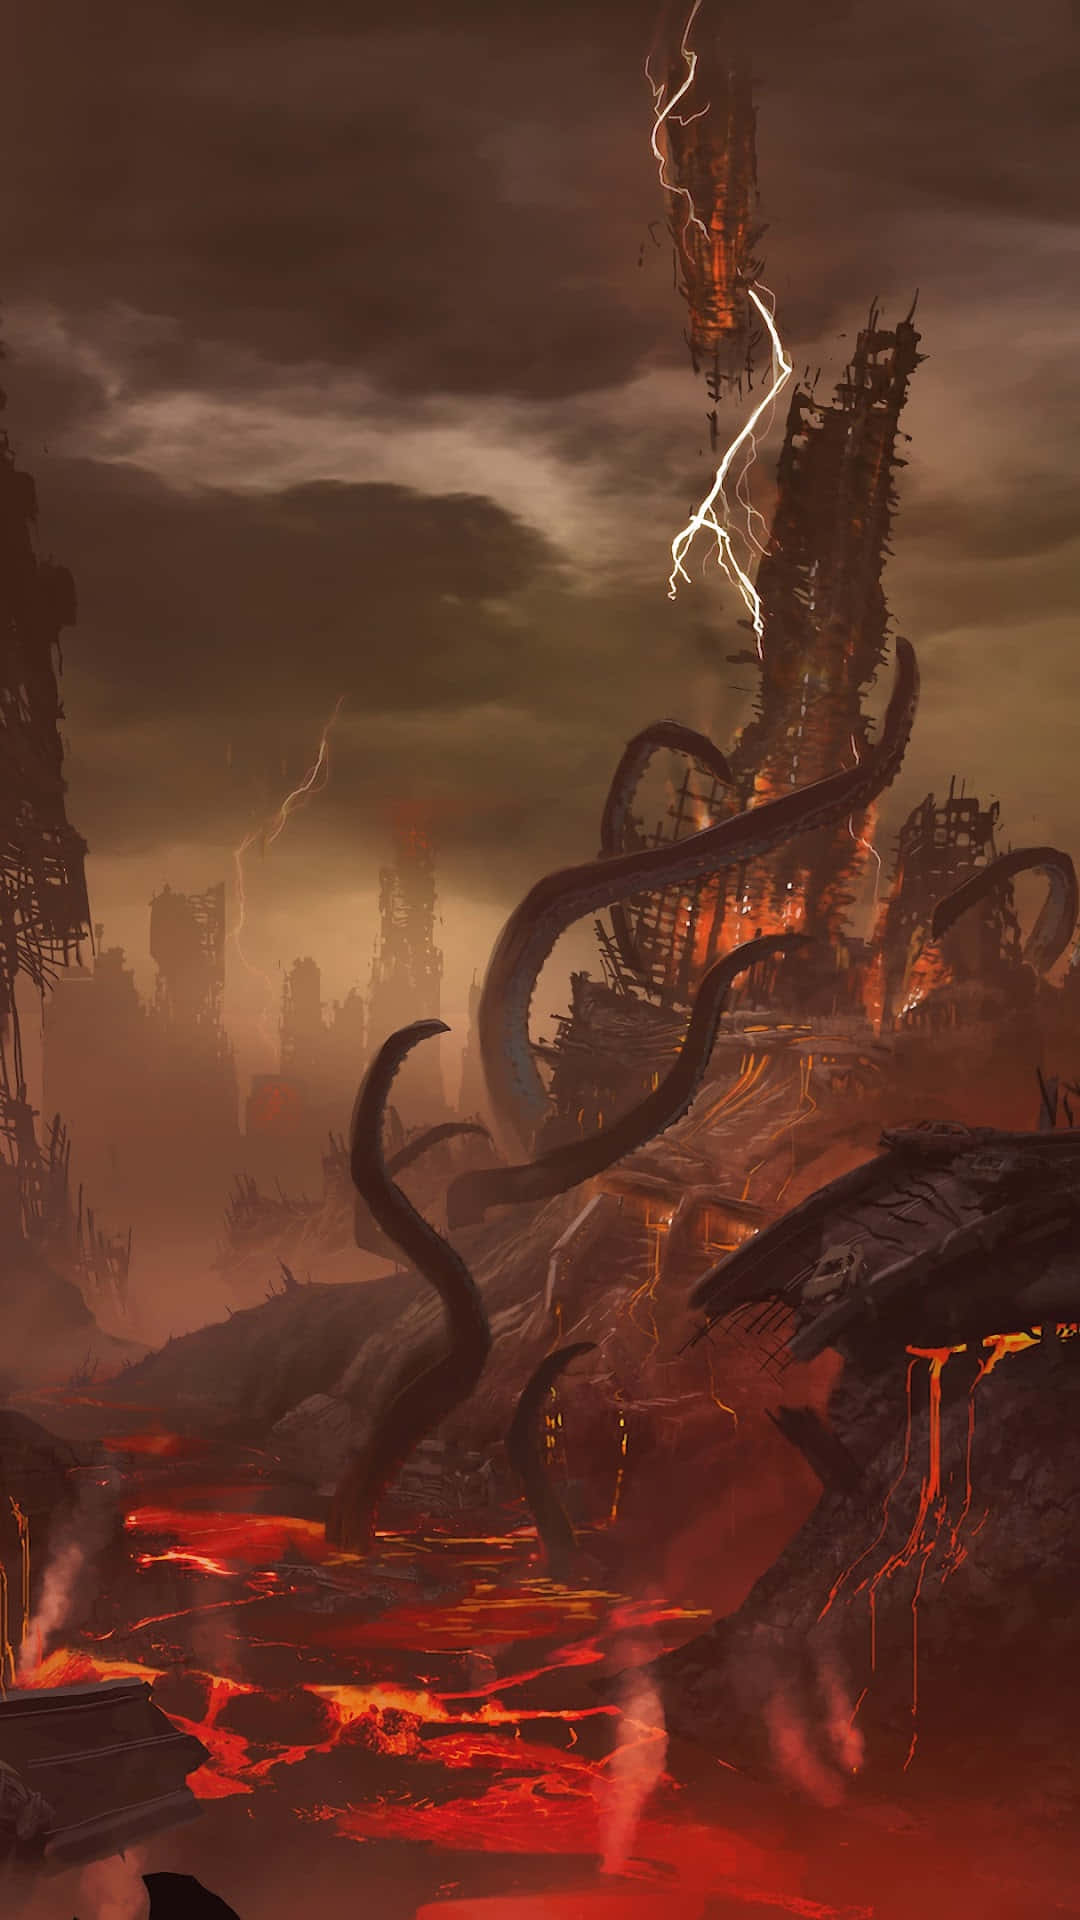 Tårn omgivet af tentakler i helvede baggrund